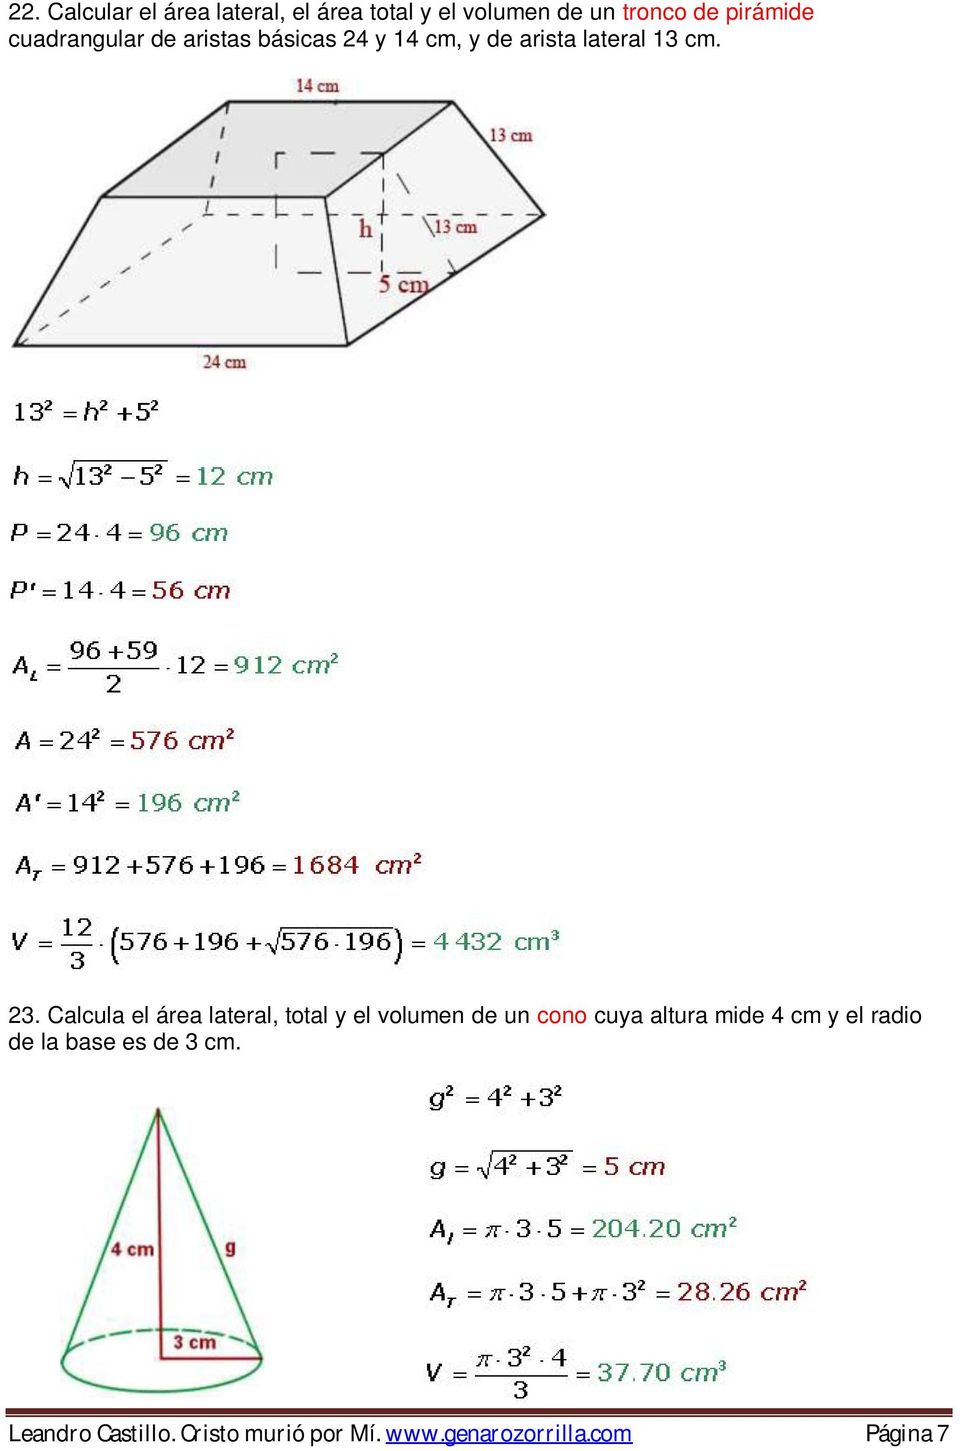 Calcula el área lateral, total y el volumen de un cono cuya altura mide 4 cm y el